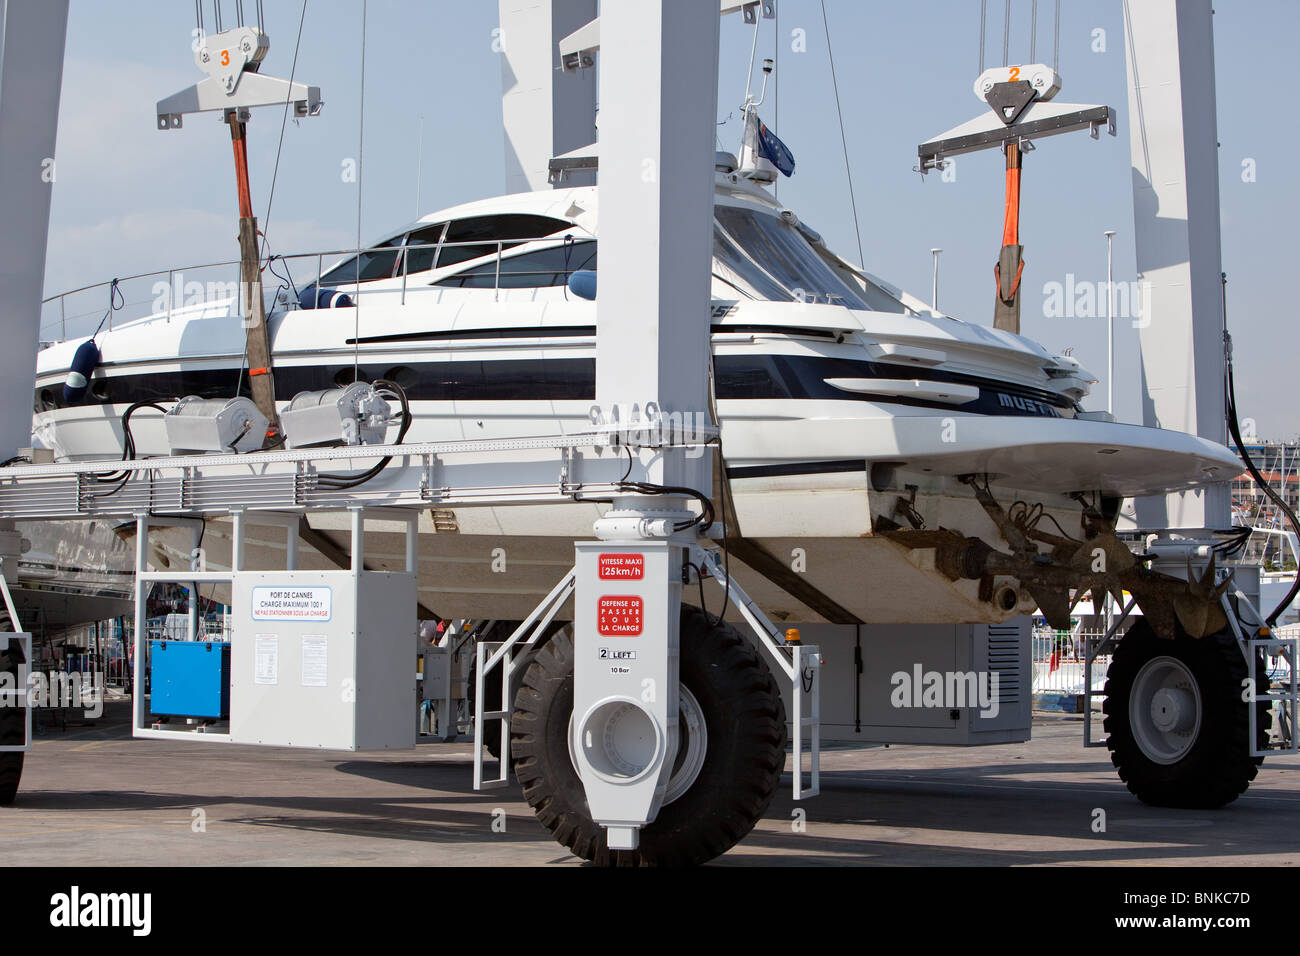 Billet d'ascenseur pour bateaux amphibies (contrôle à distance, toutes les roues motrices) chantiers de réparation de bateaux à Cannes sud de la France. Banque D'Images